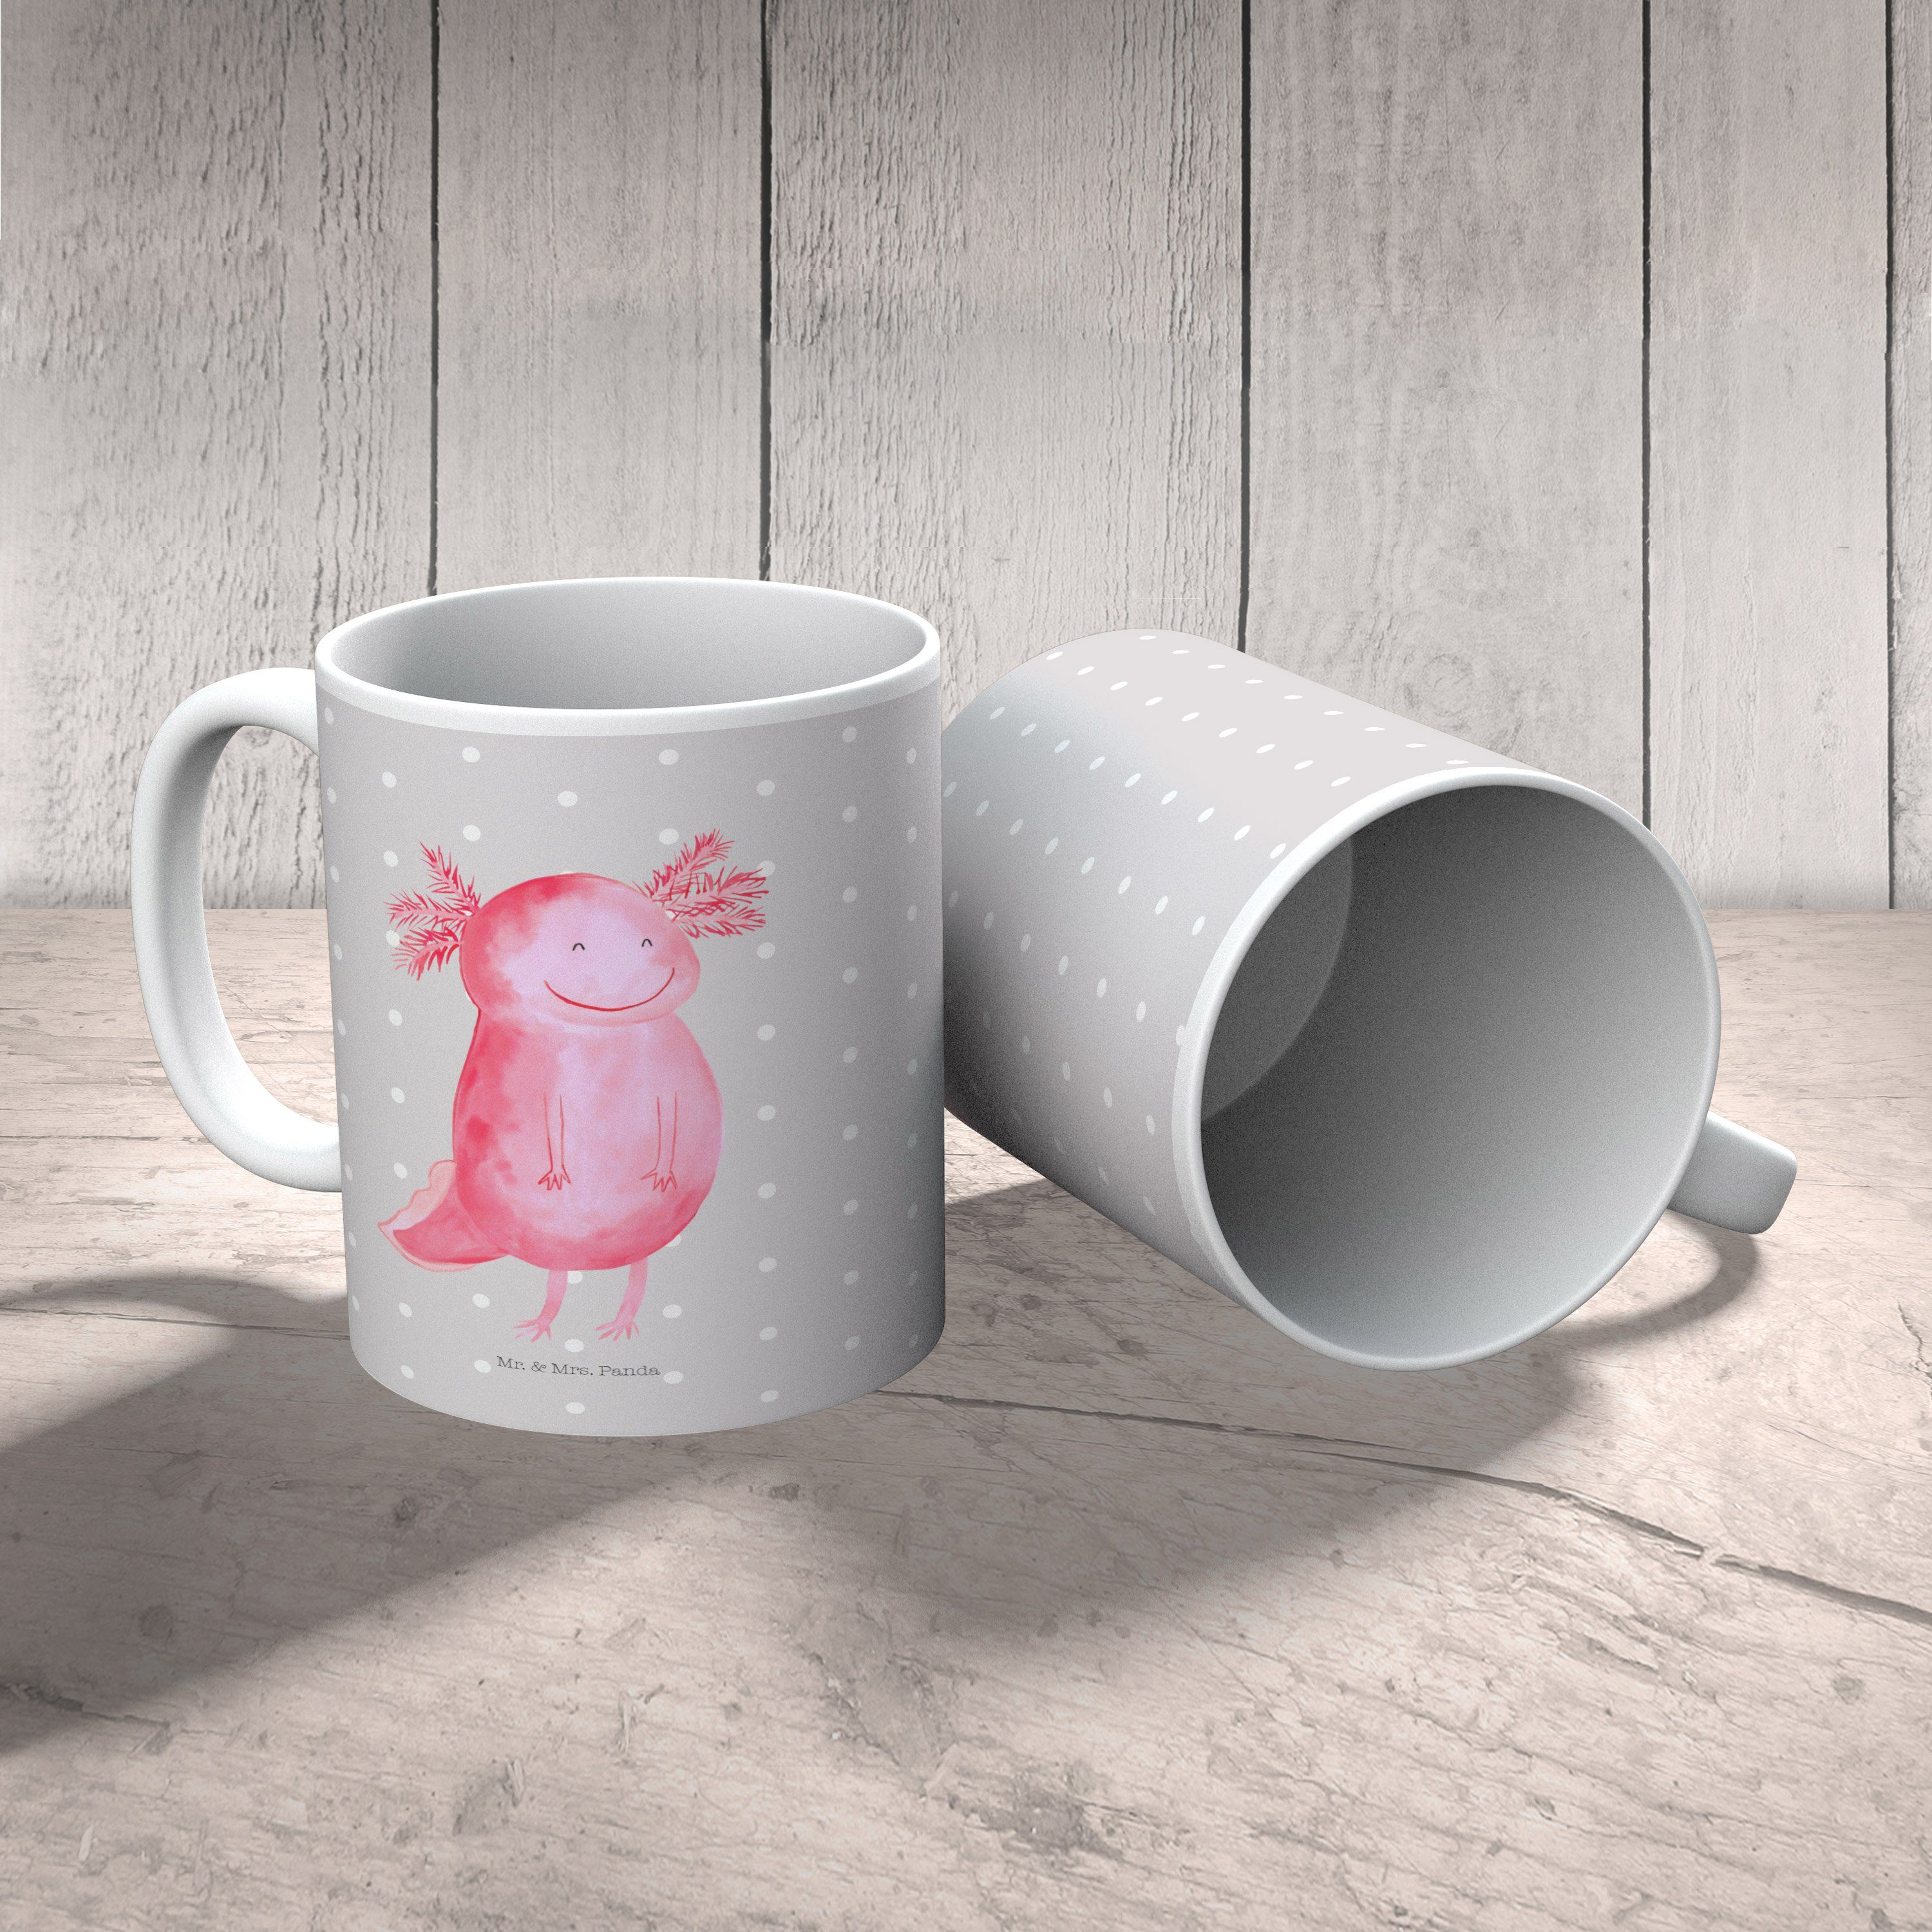 Mr. & Mrs. Panda Sc, - Axolotl Keramik Geschenk, Pastell - Sprüche, Tasse, glücklich Tasse Tasse Grau